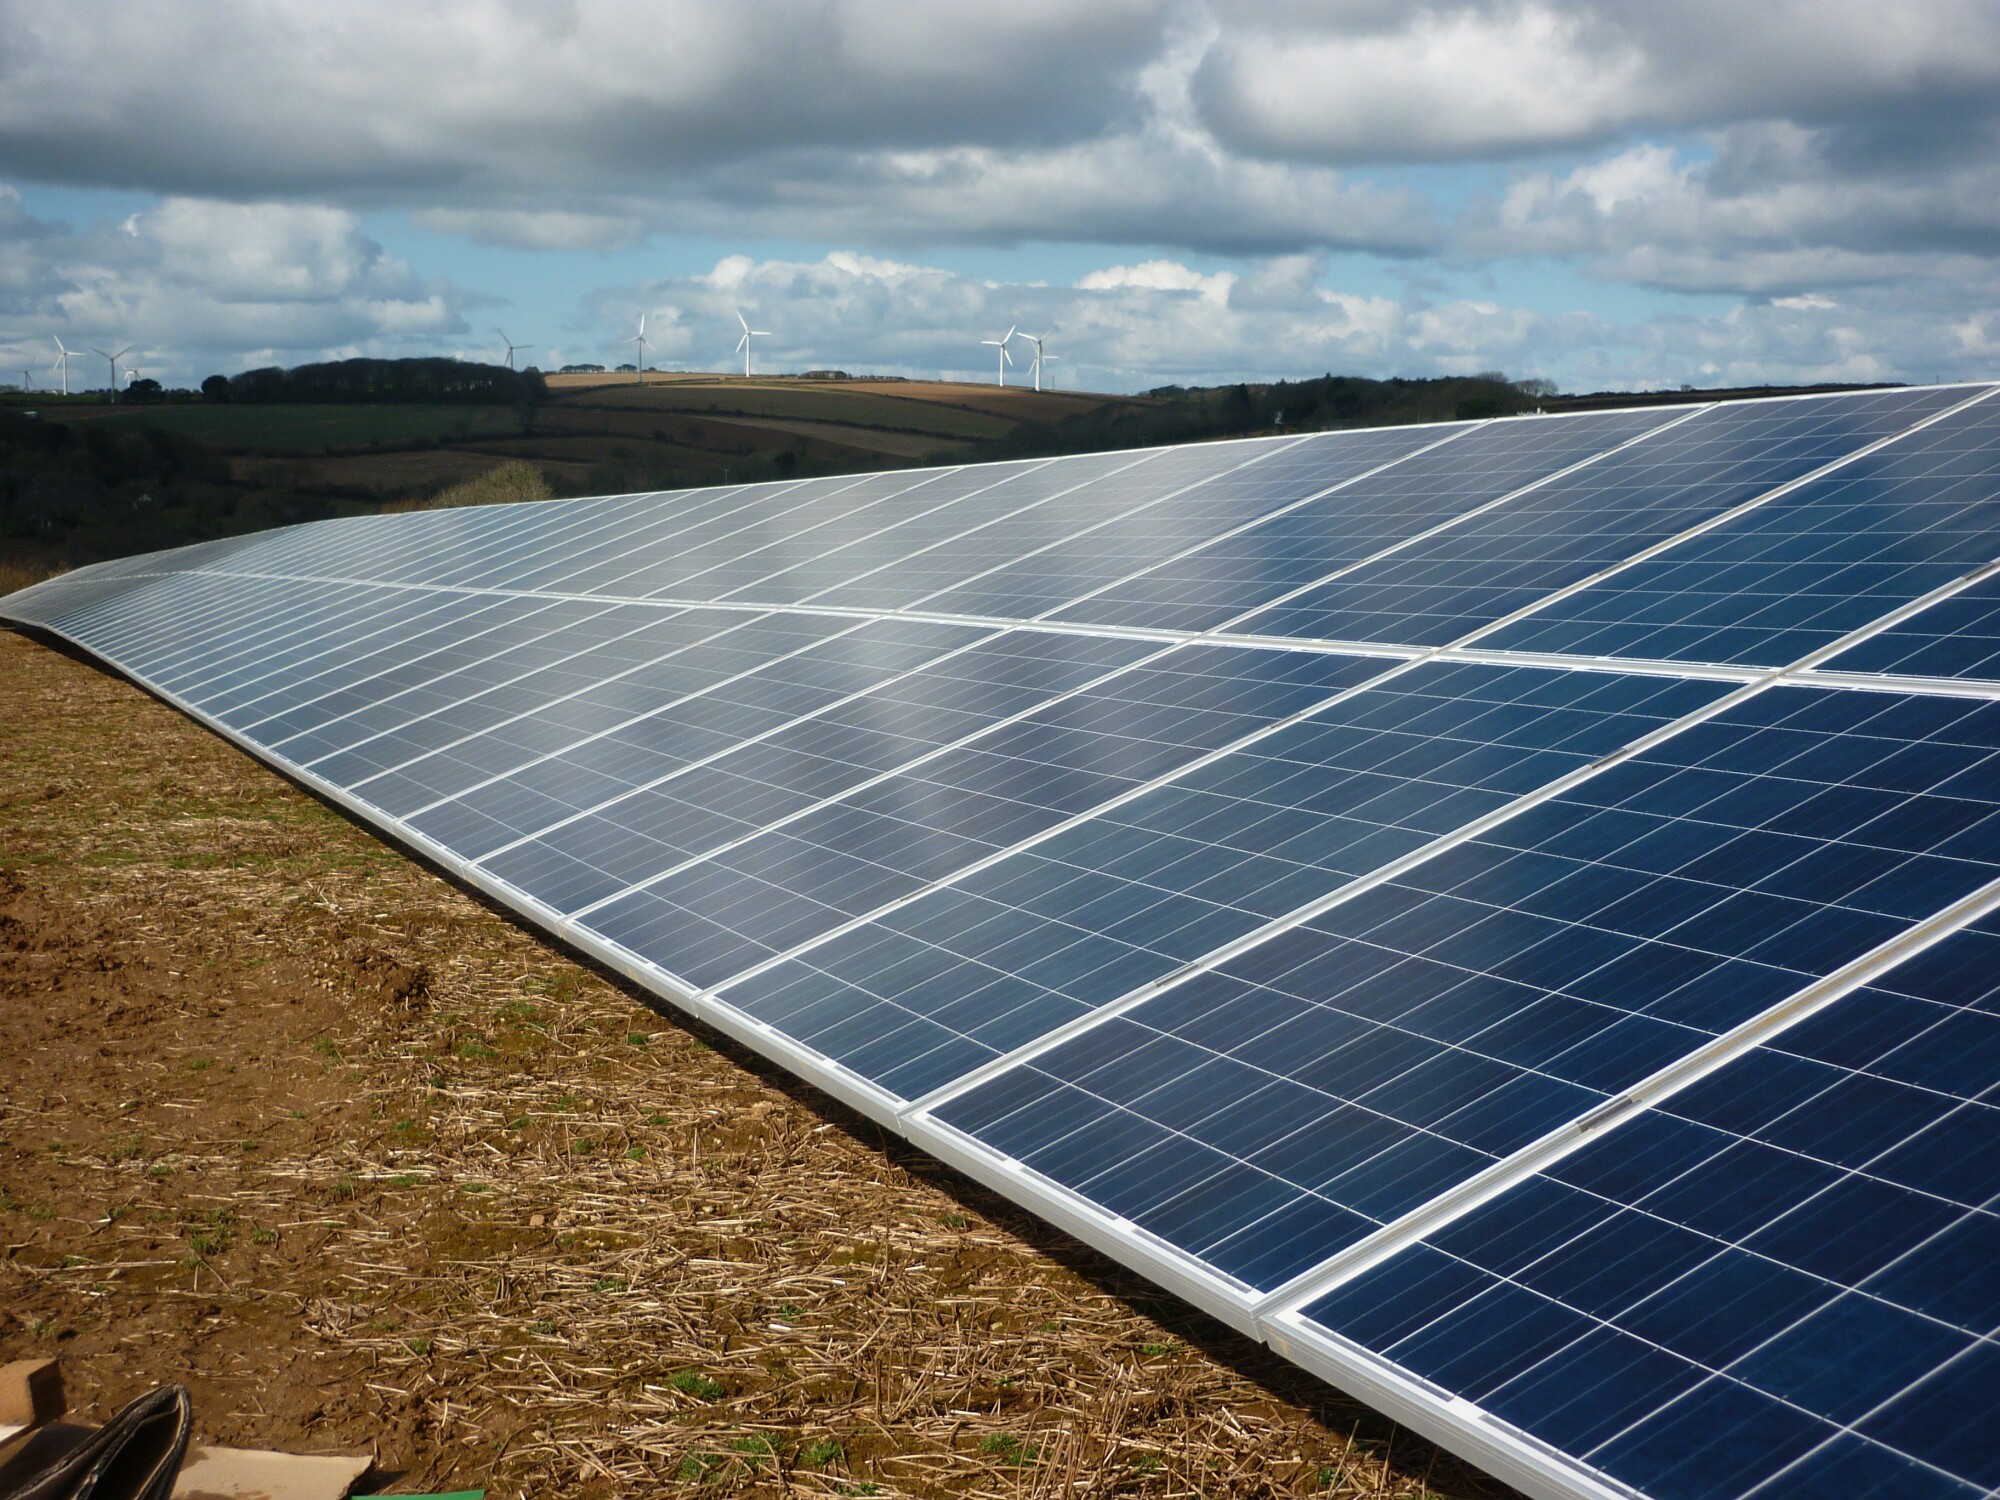 Solar Energy Farm